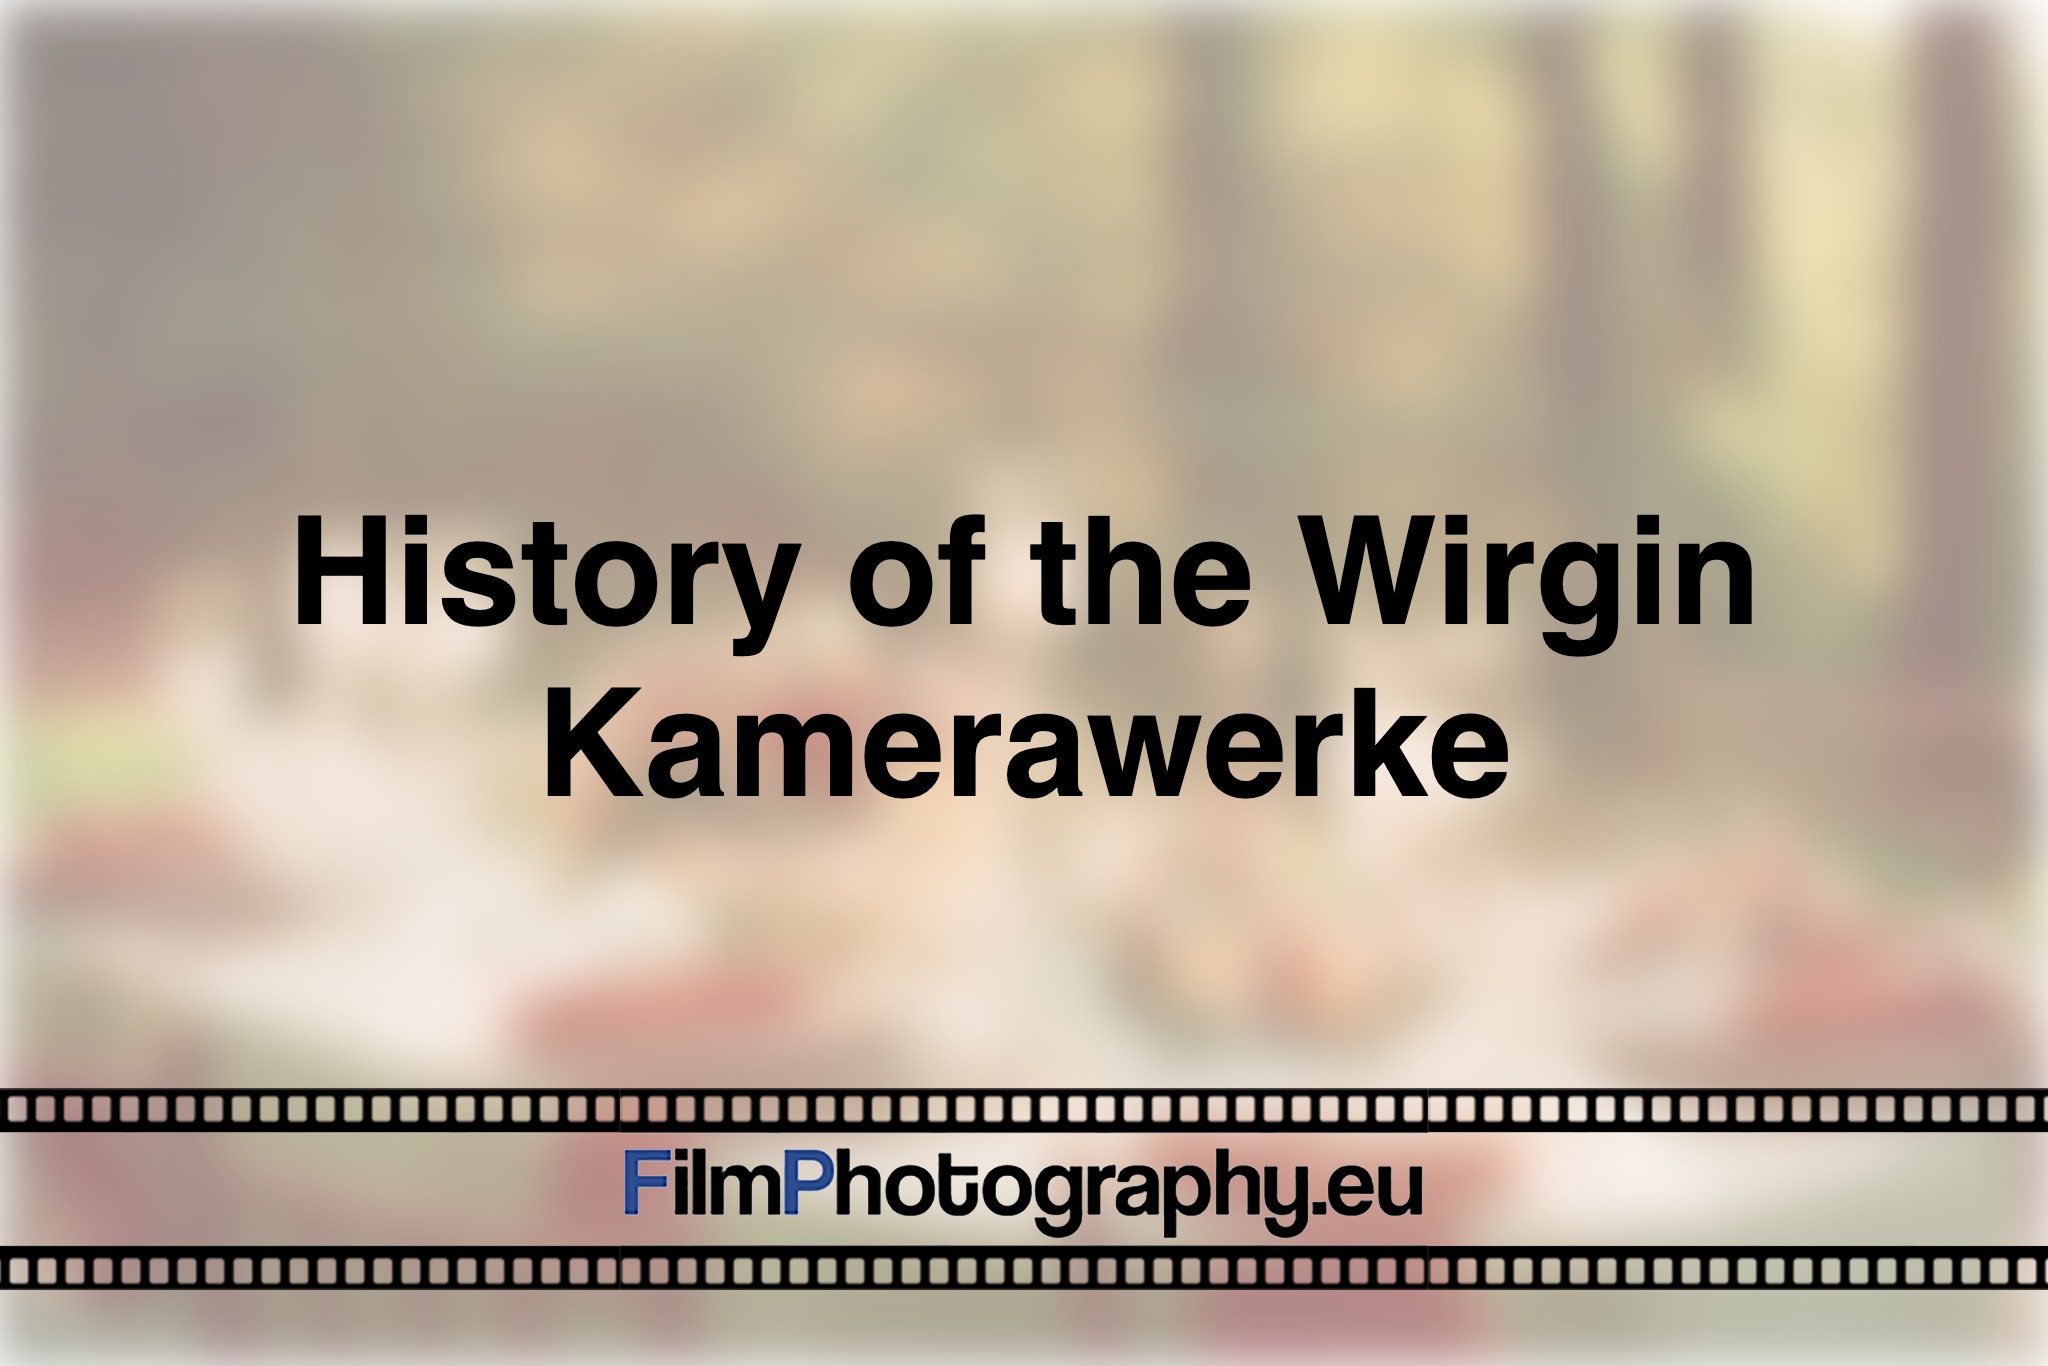 history-of-the-wirgin-kamerawerke-photo-bnv